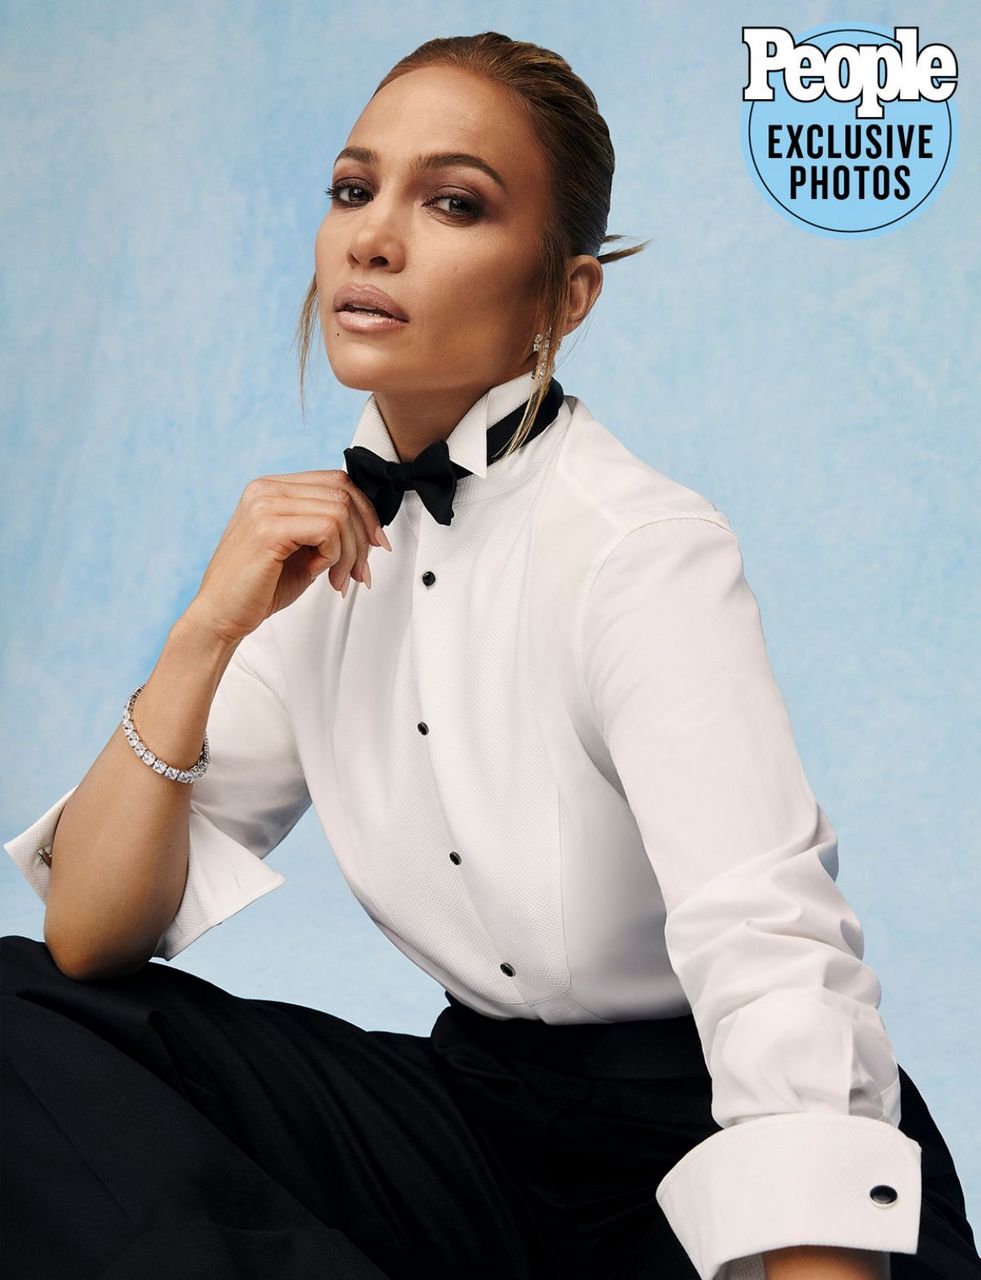 Jennifer Lopez For People Magazine February